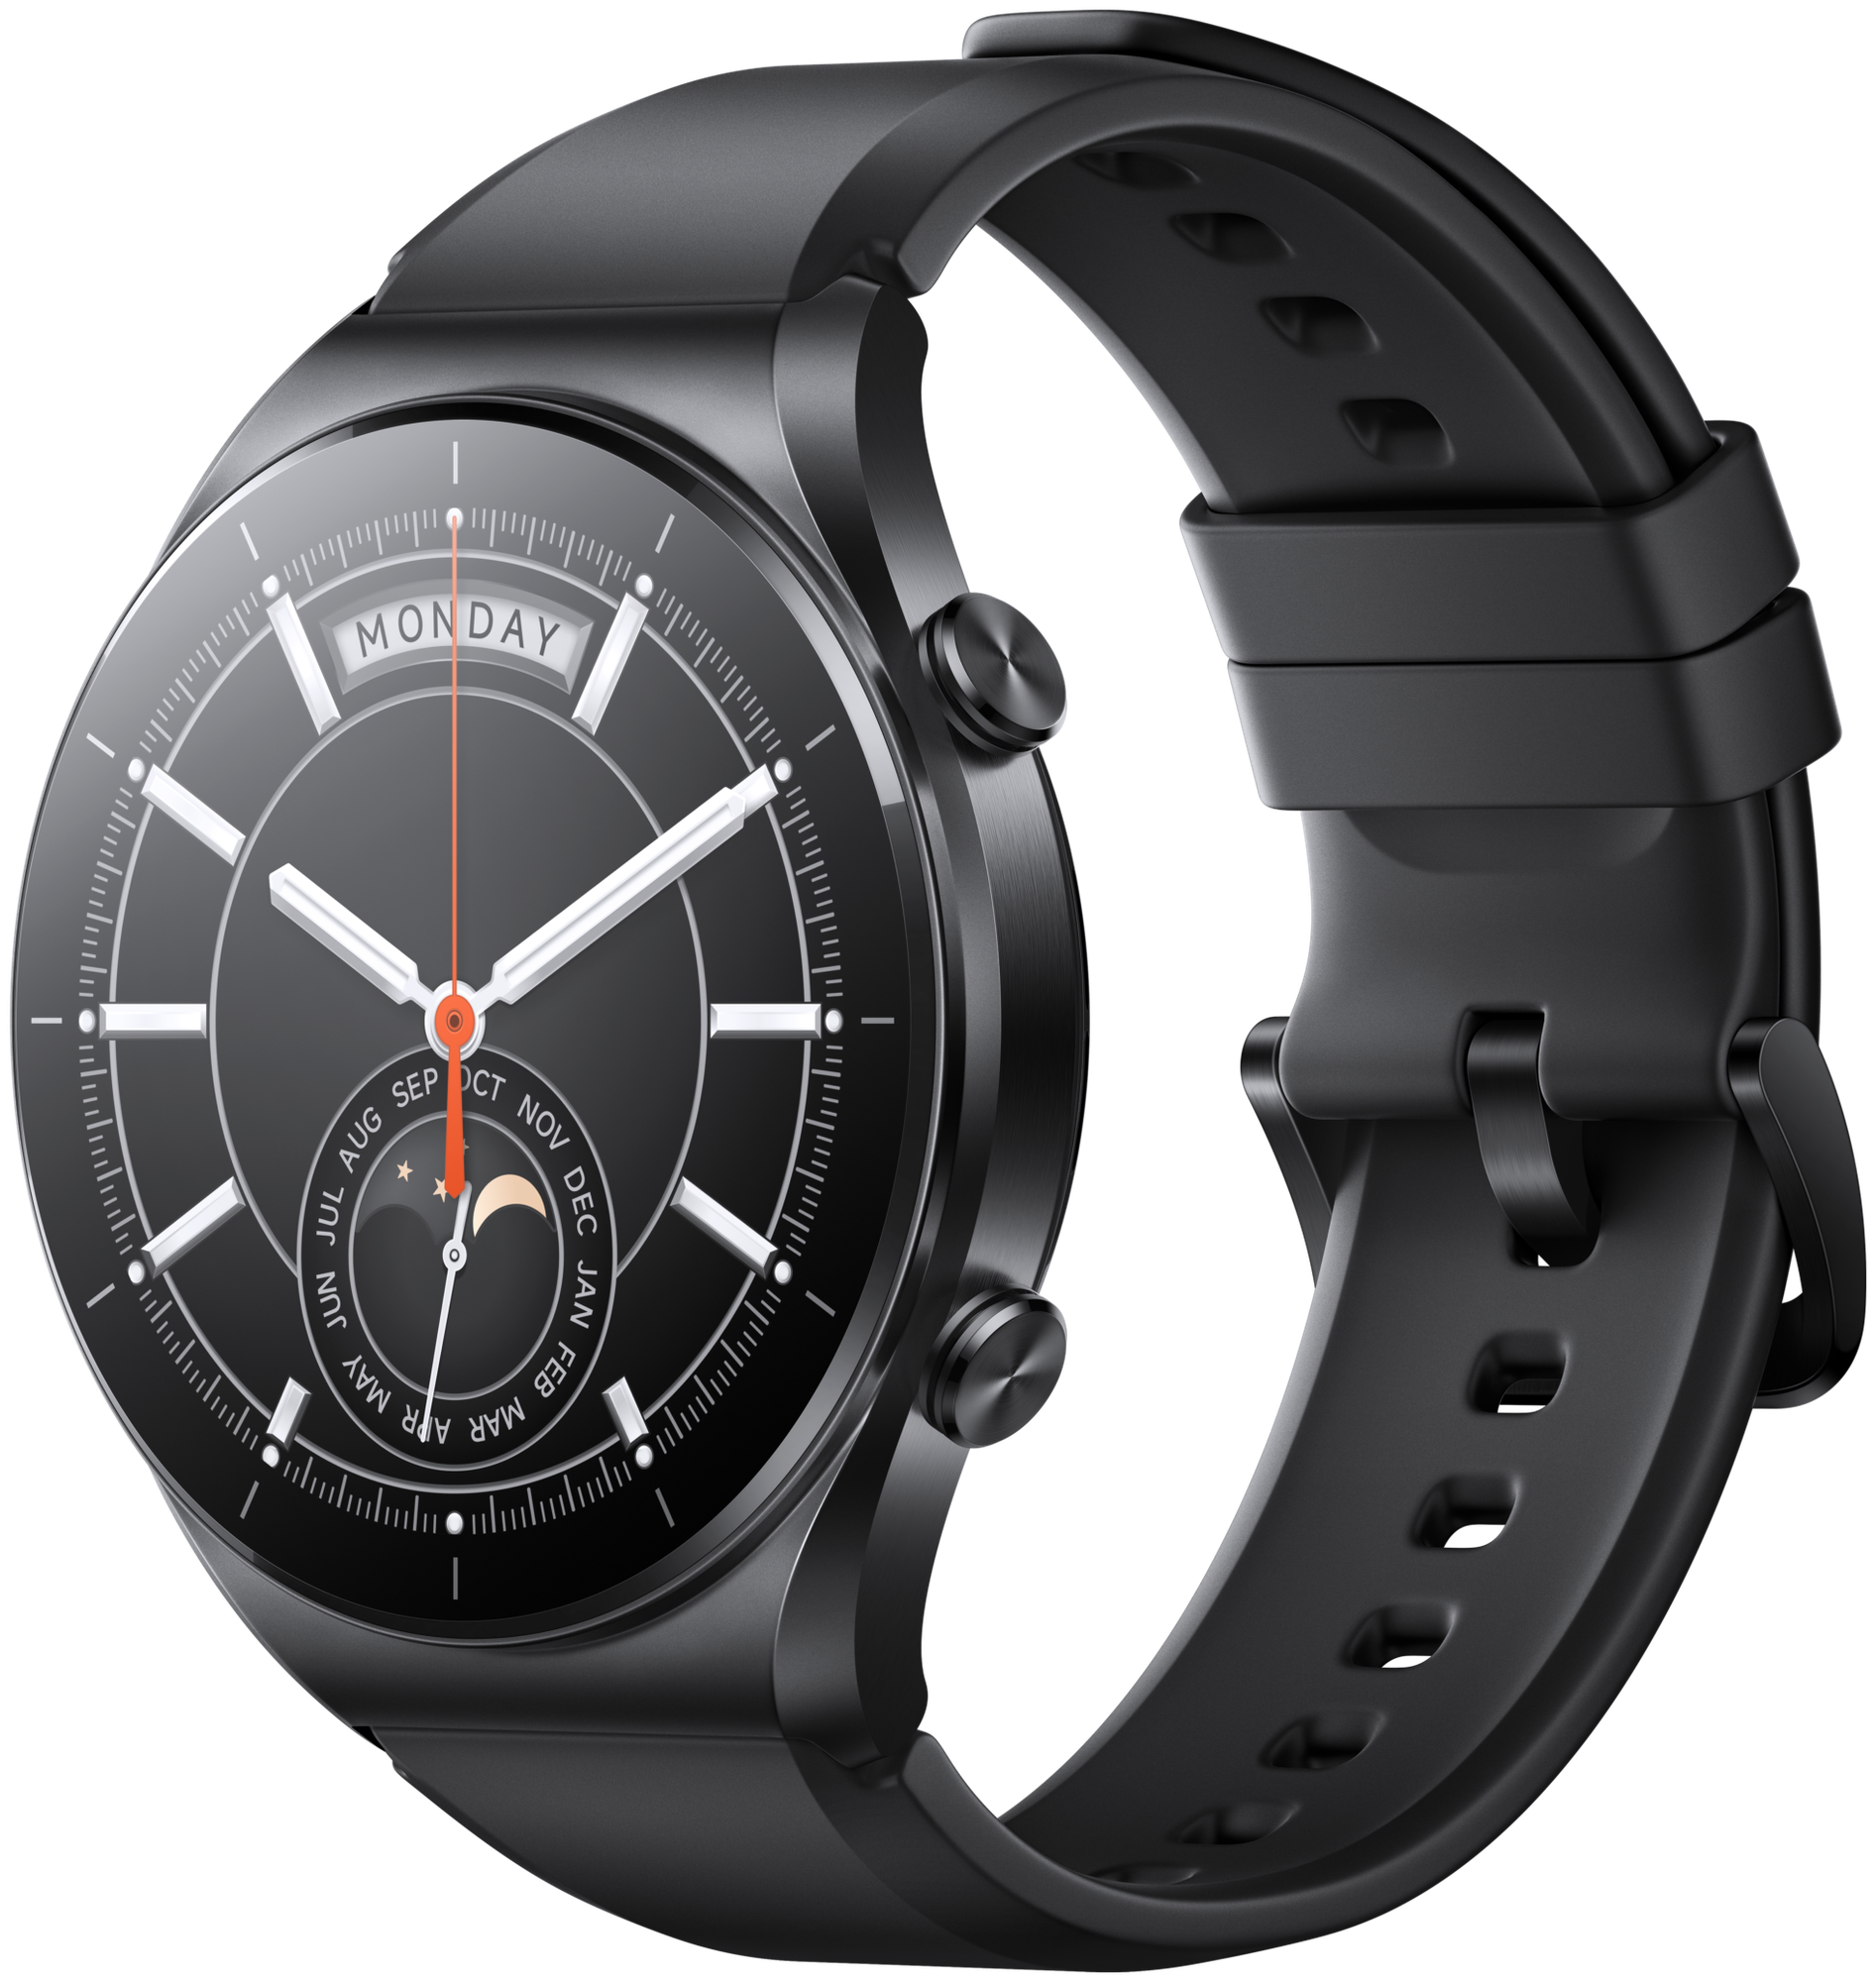 Смарт-часы Xiaomi Watch S1 GL Black (BHR5559GL)